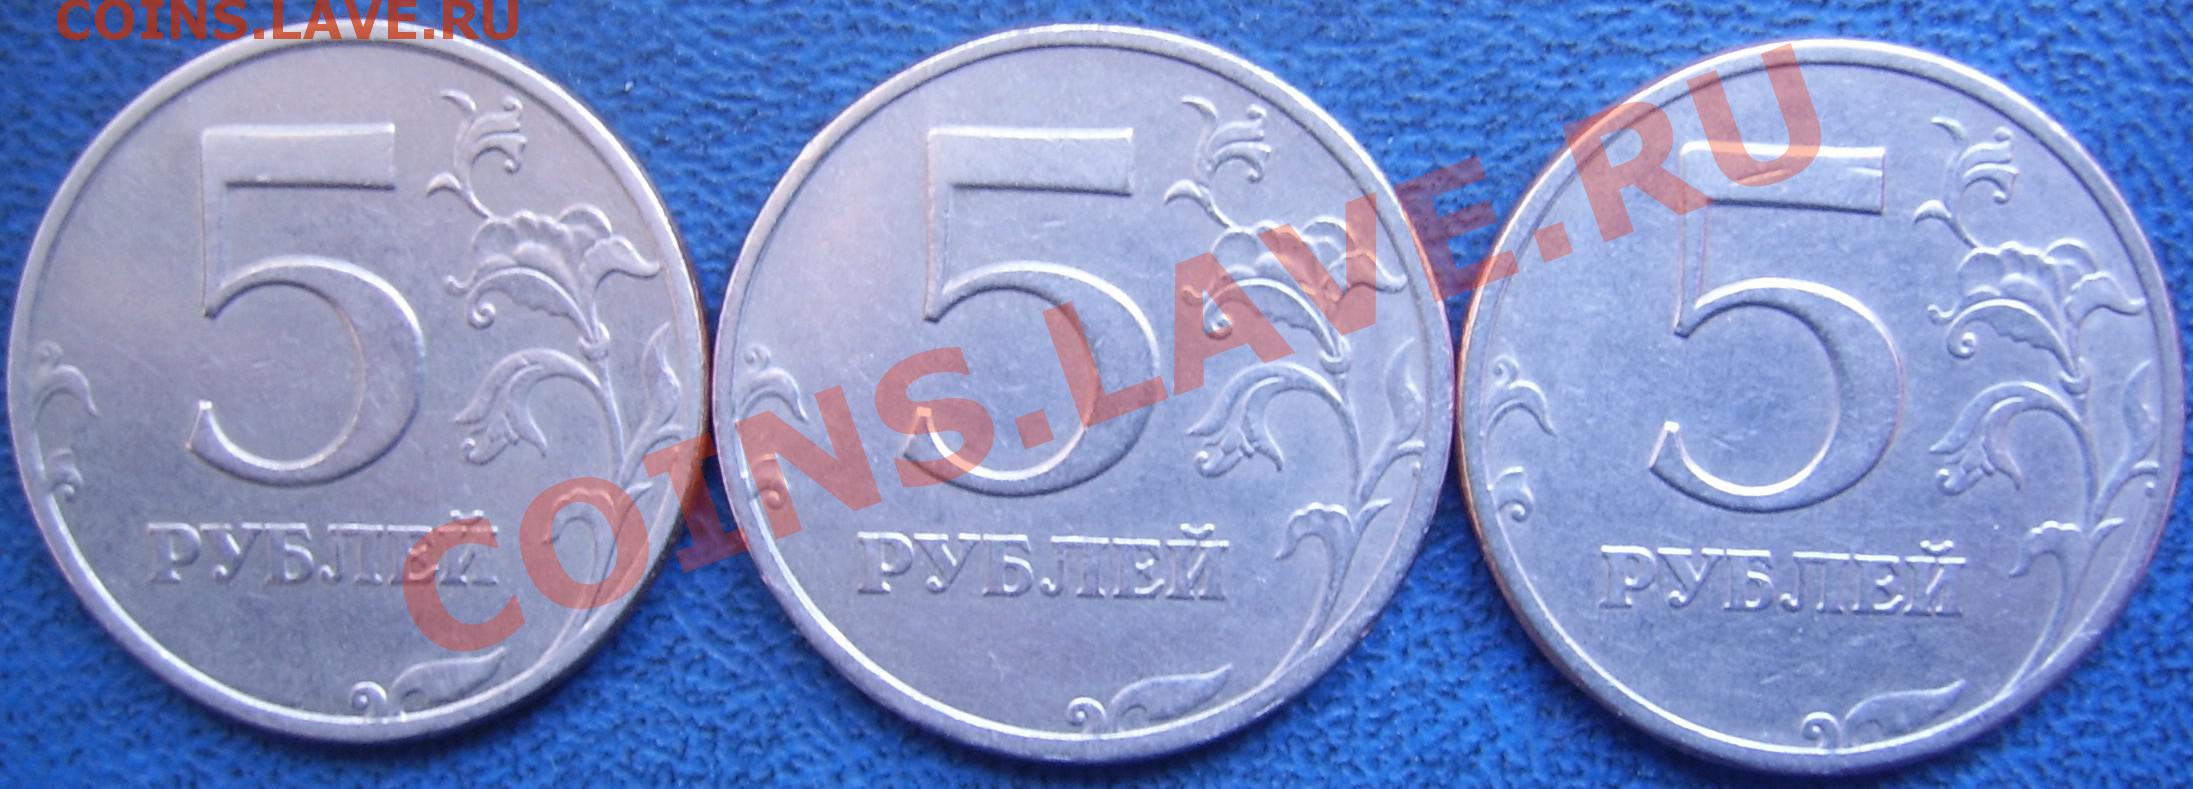 Рубль пять 20 часть. 5 Рублей 1997 СПМД. Беларусь 1 рубль, 1997. Синие пять рублей. 5 Рублей 1997 г. СПМД - шт. 2.23 Увеличенное изображение реверса.